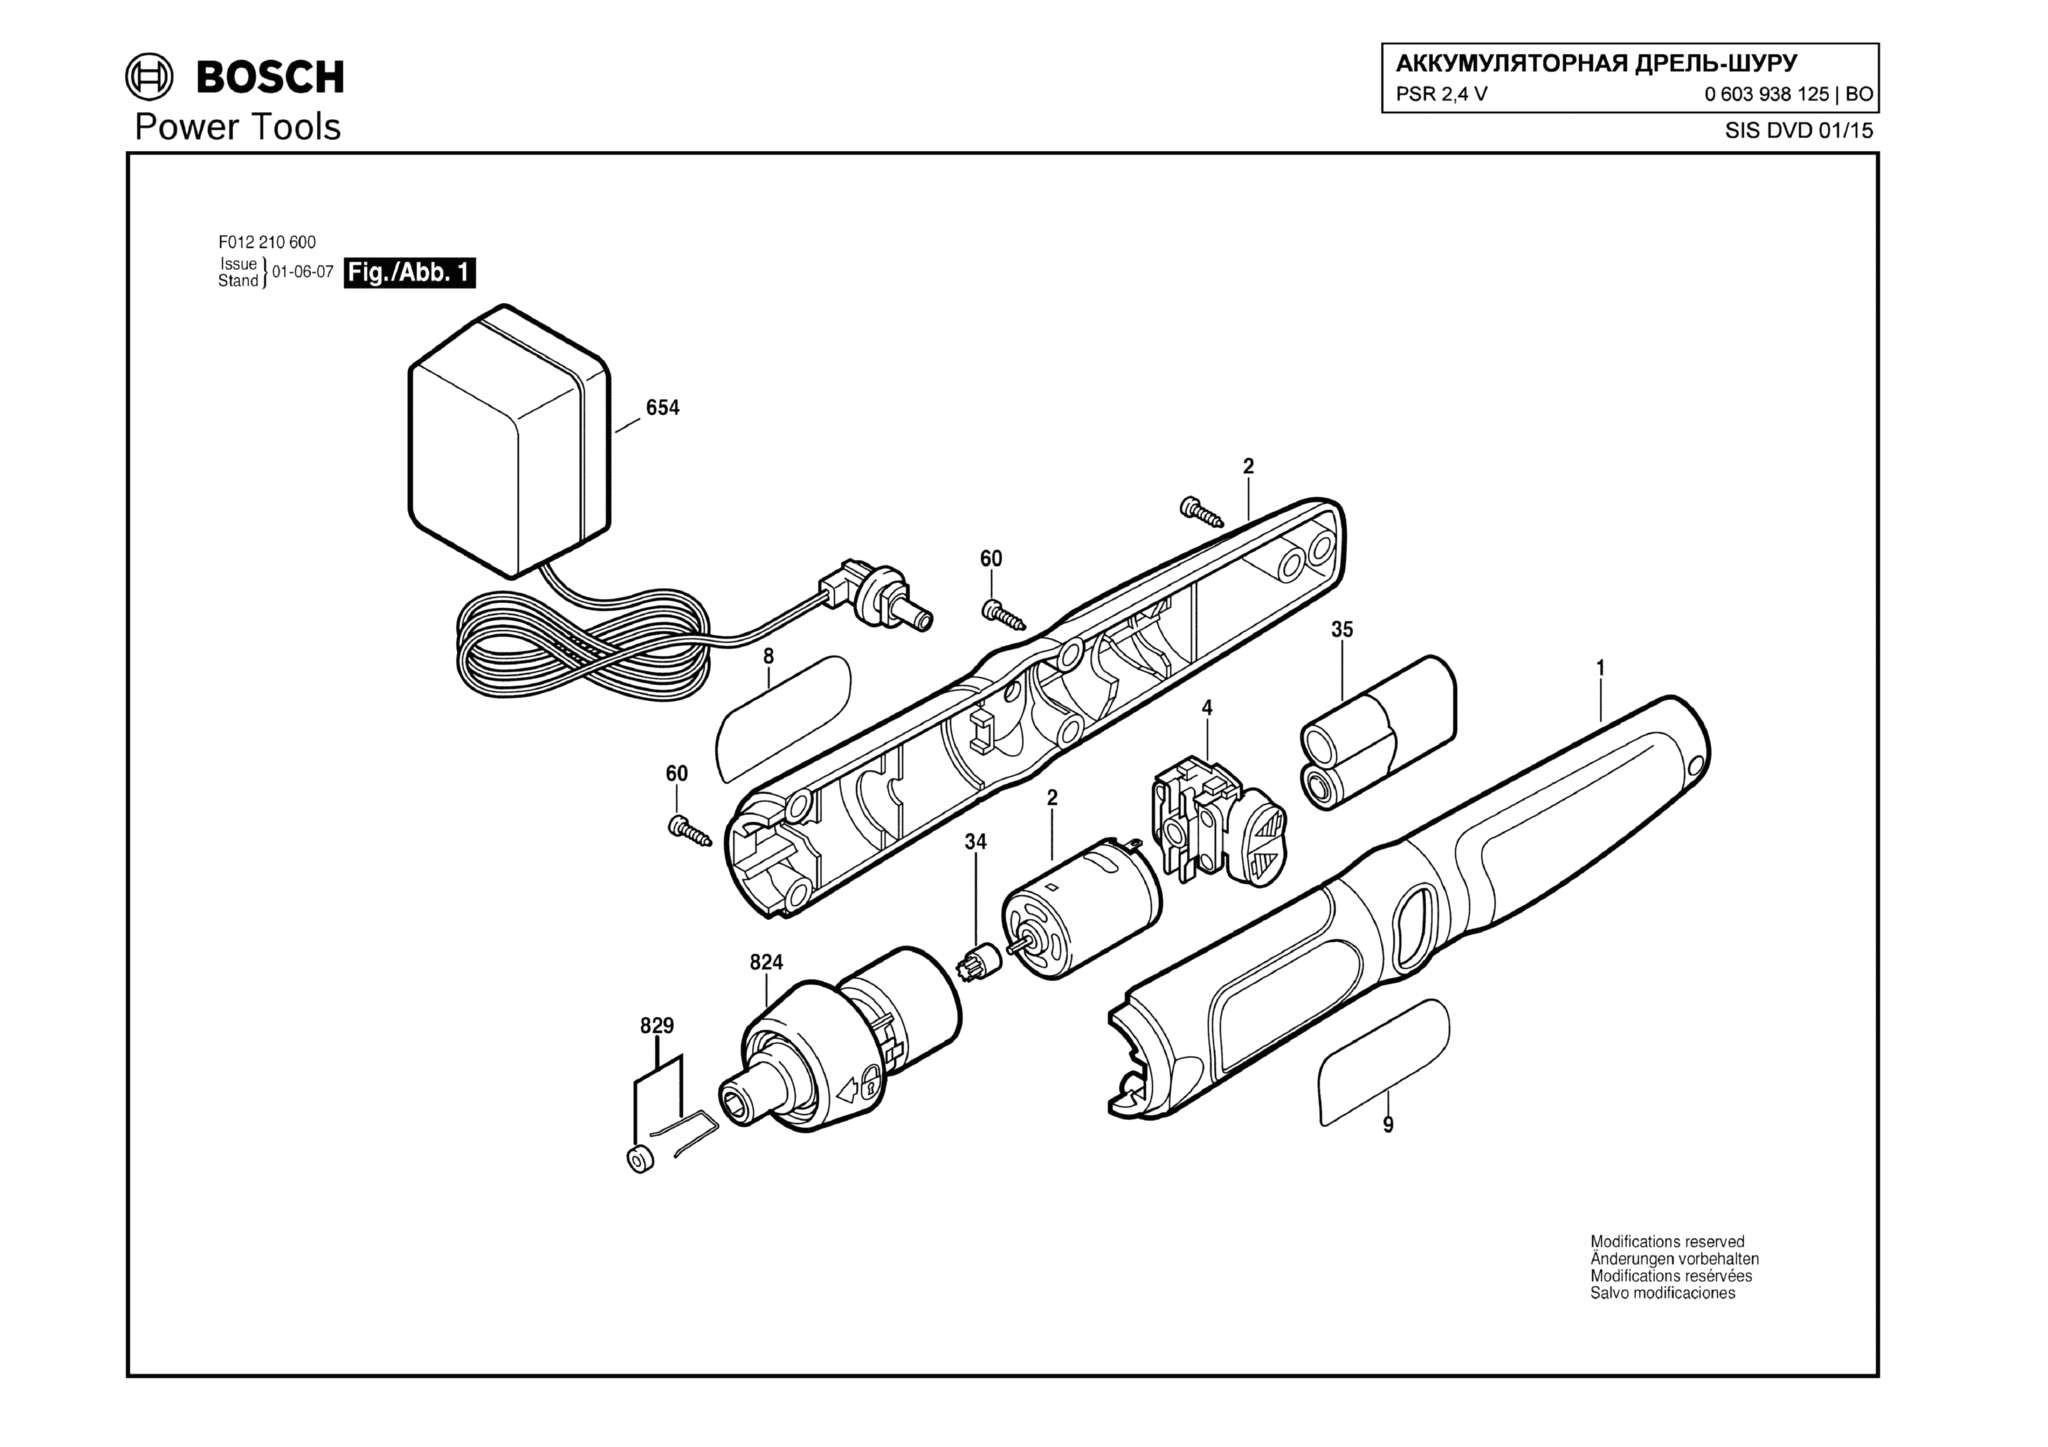 Запчасти, схема и деталировка Bosch PSR 2,4 V (ТИП 0603938125)